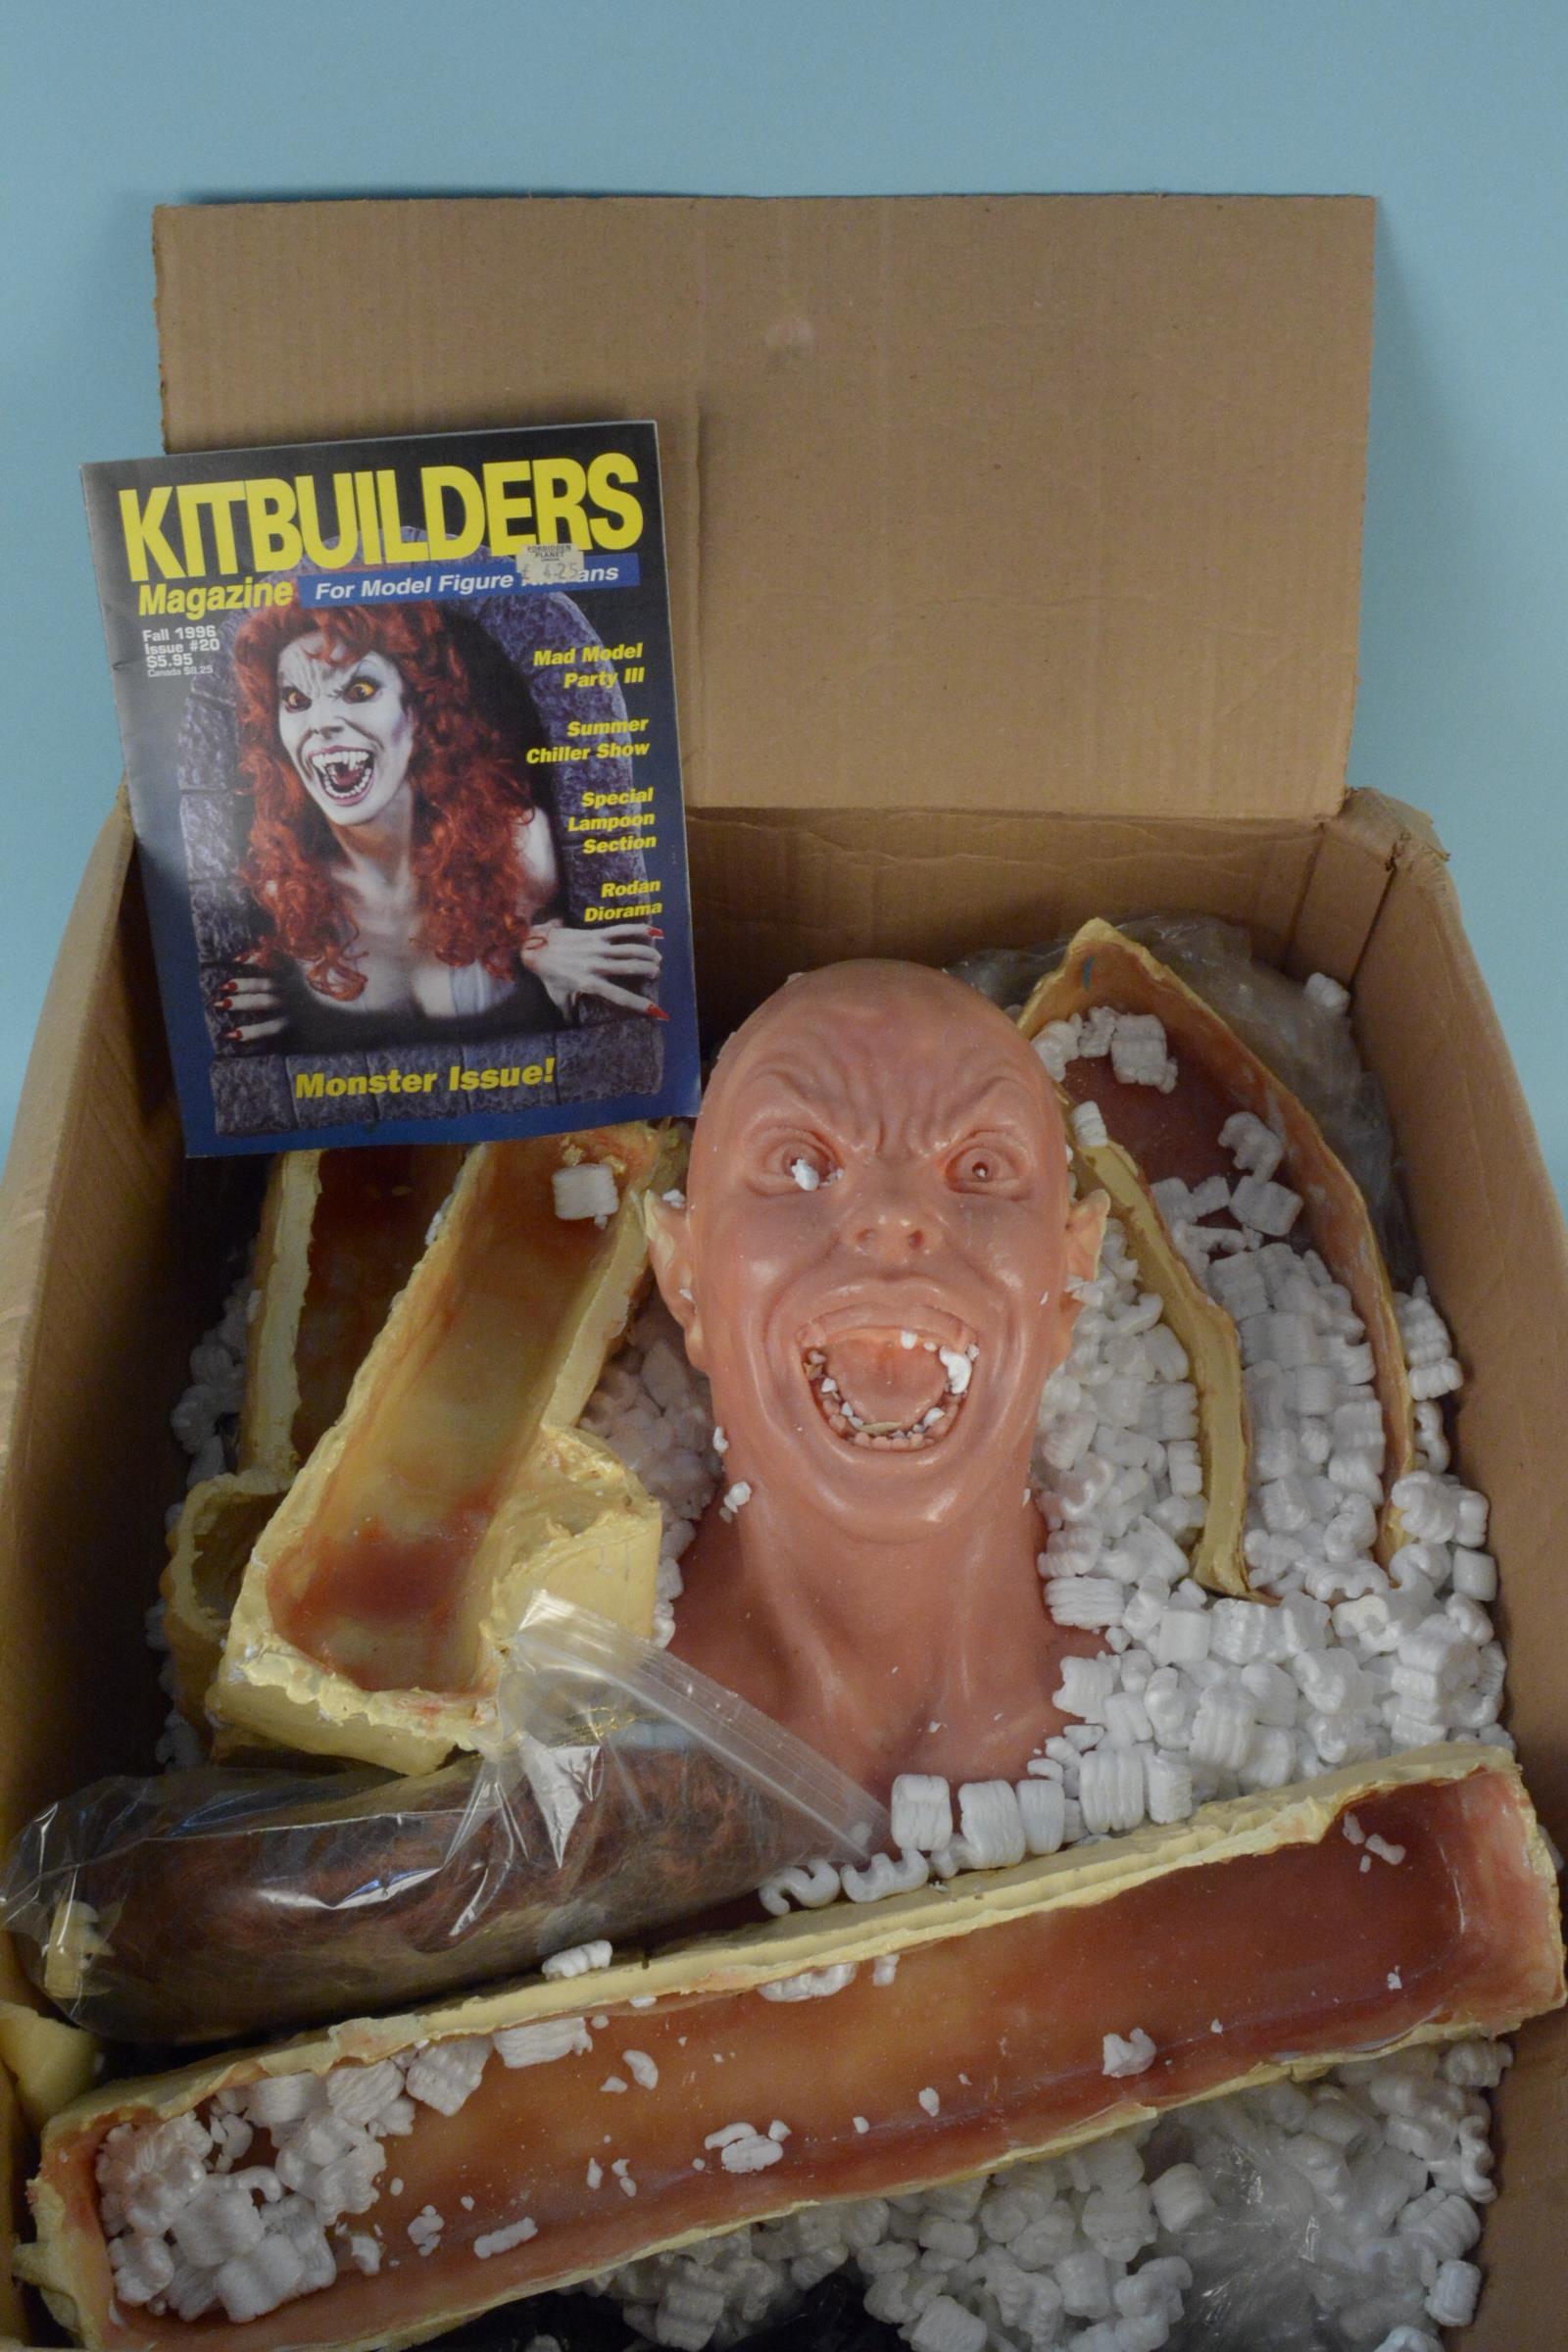 A still boxed large 'Kitbuilders' monster issue model,